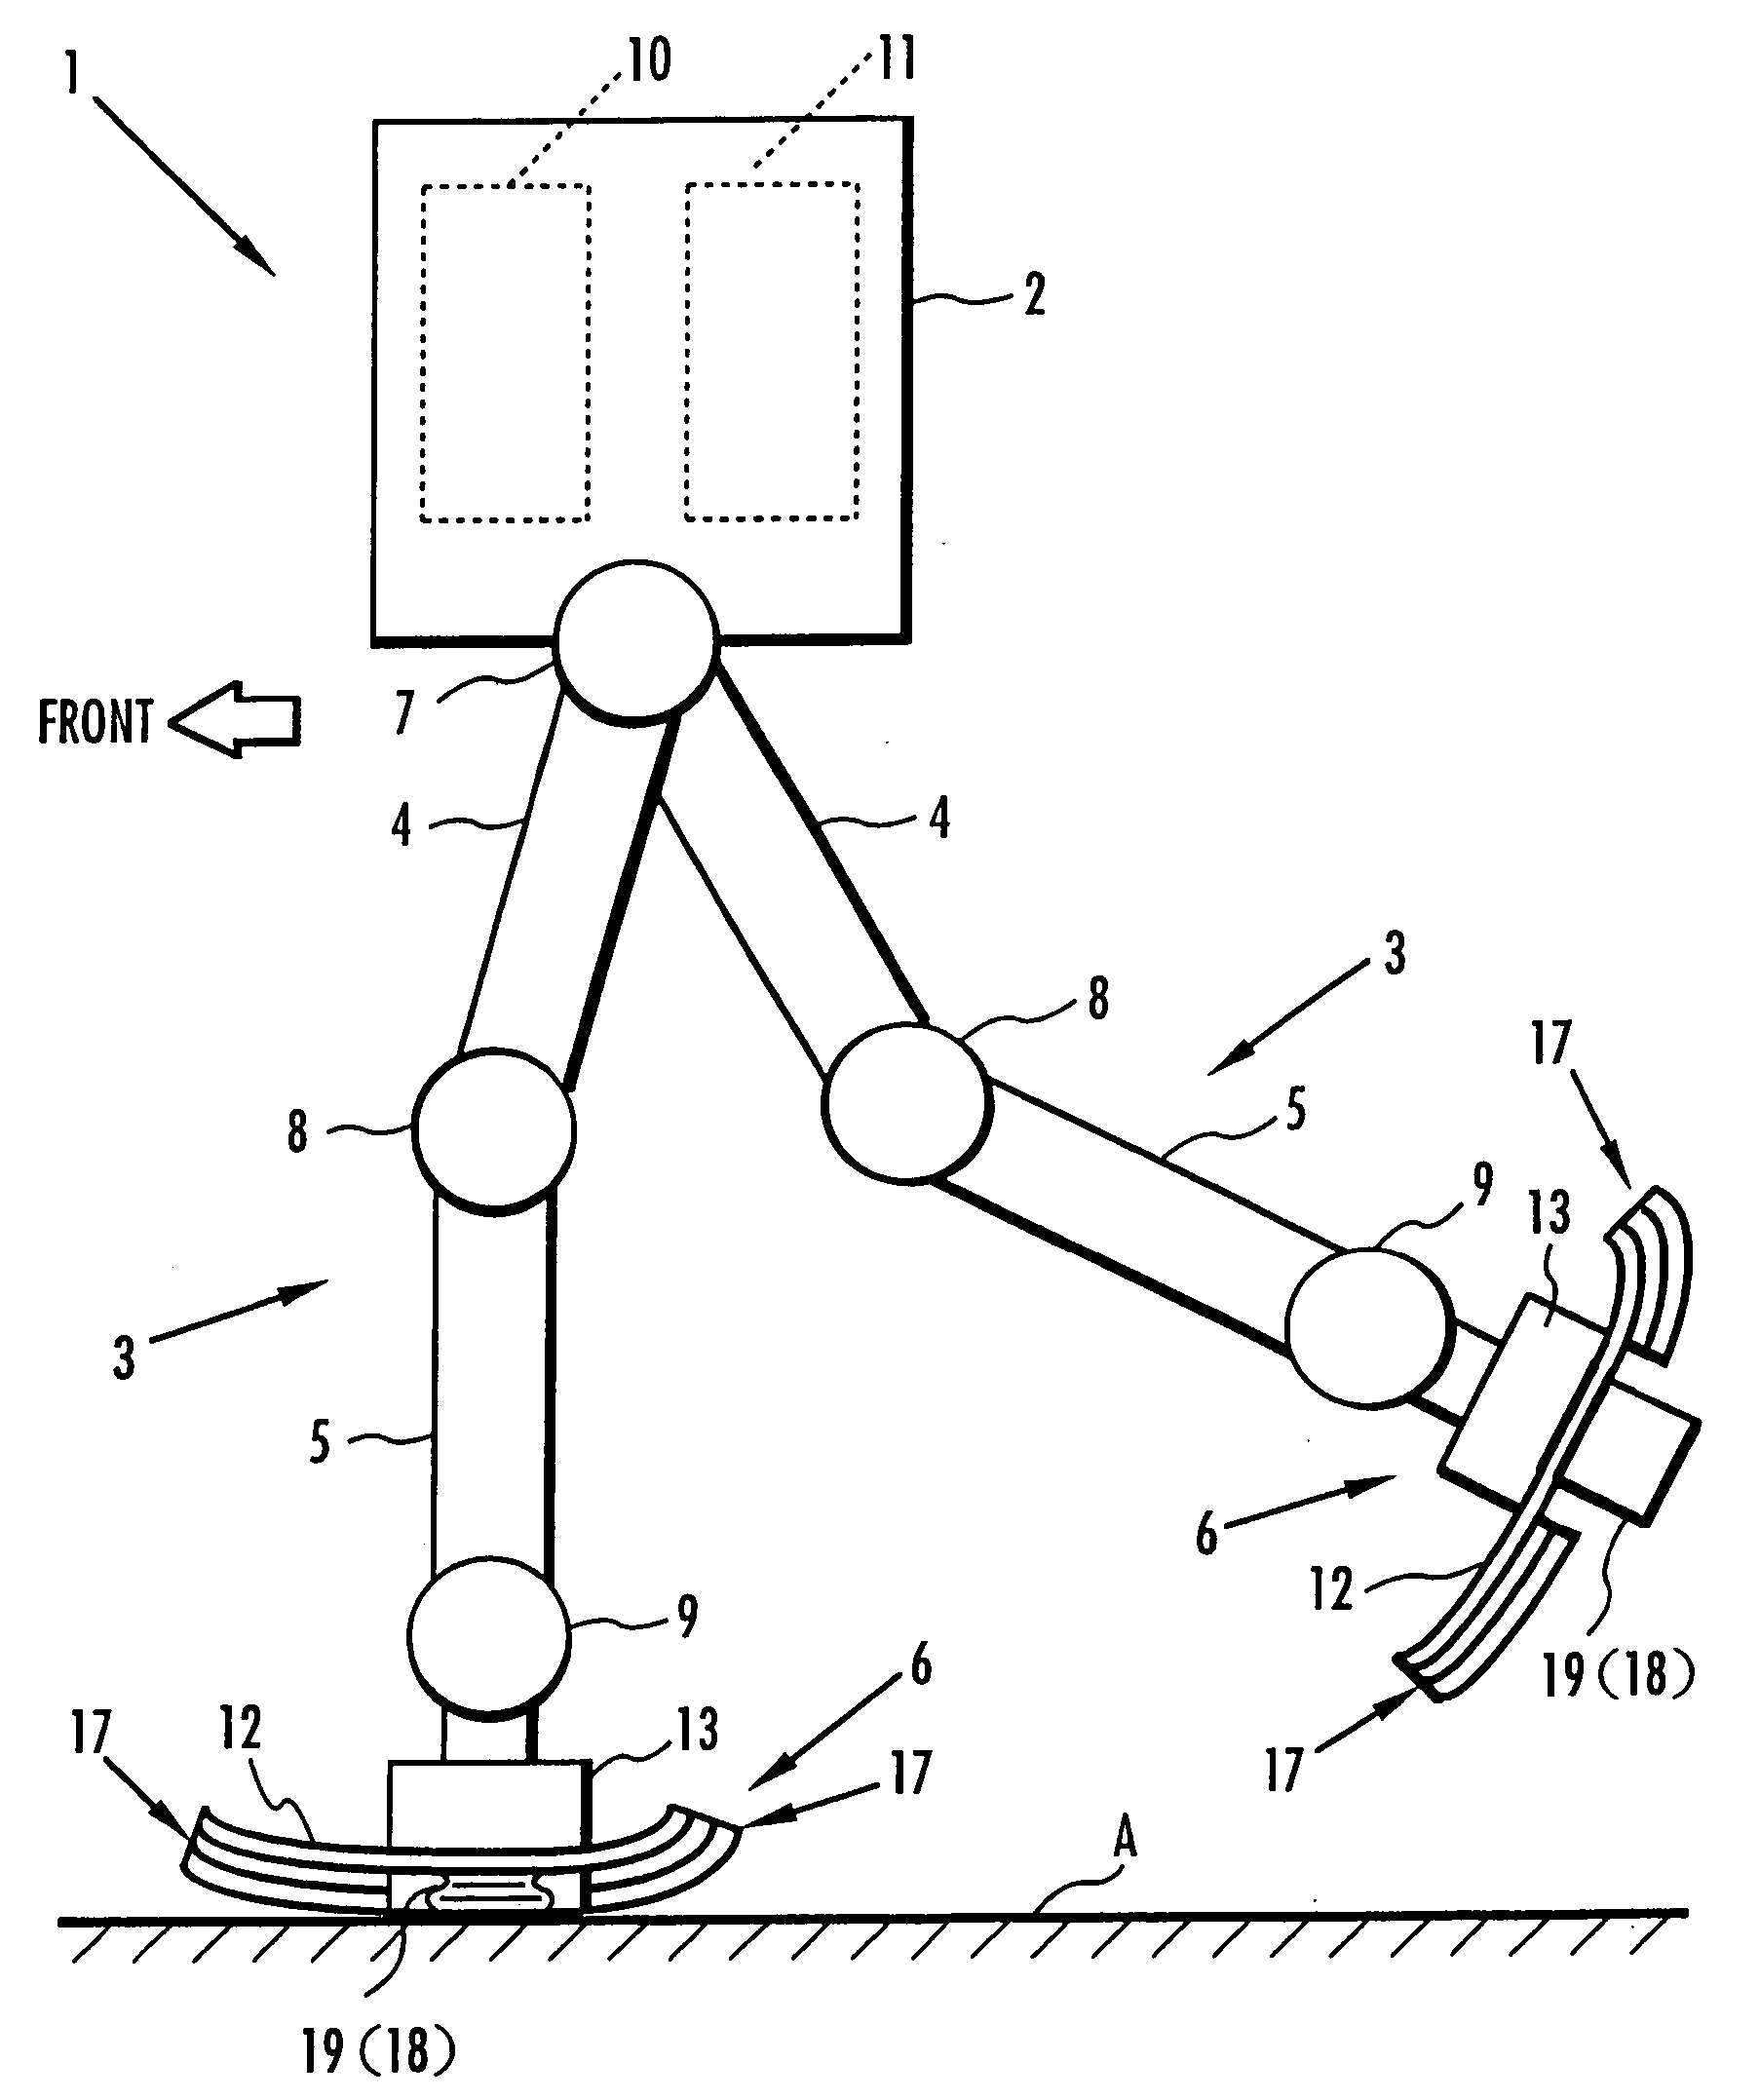 Device for absorbing floor-landing shock for legged mobile robot